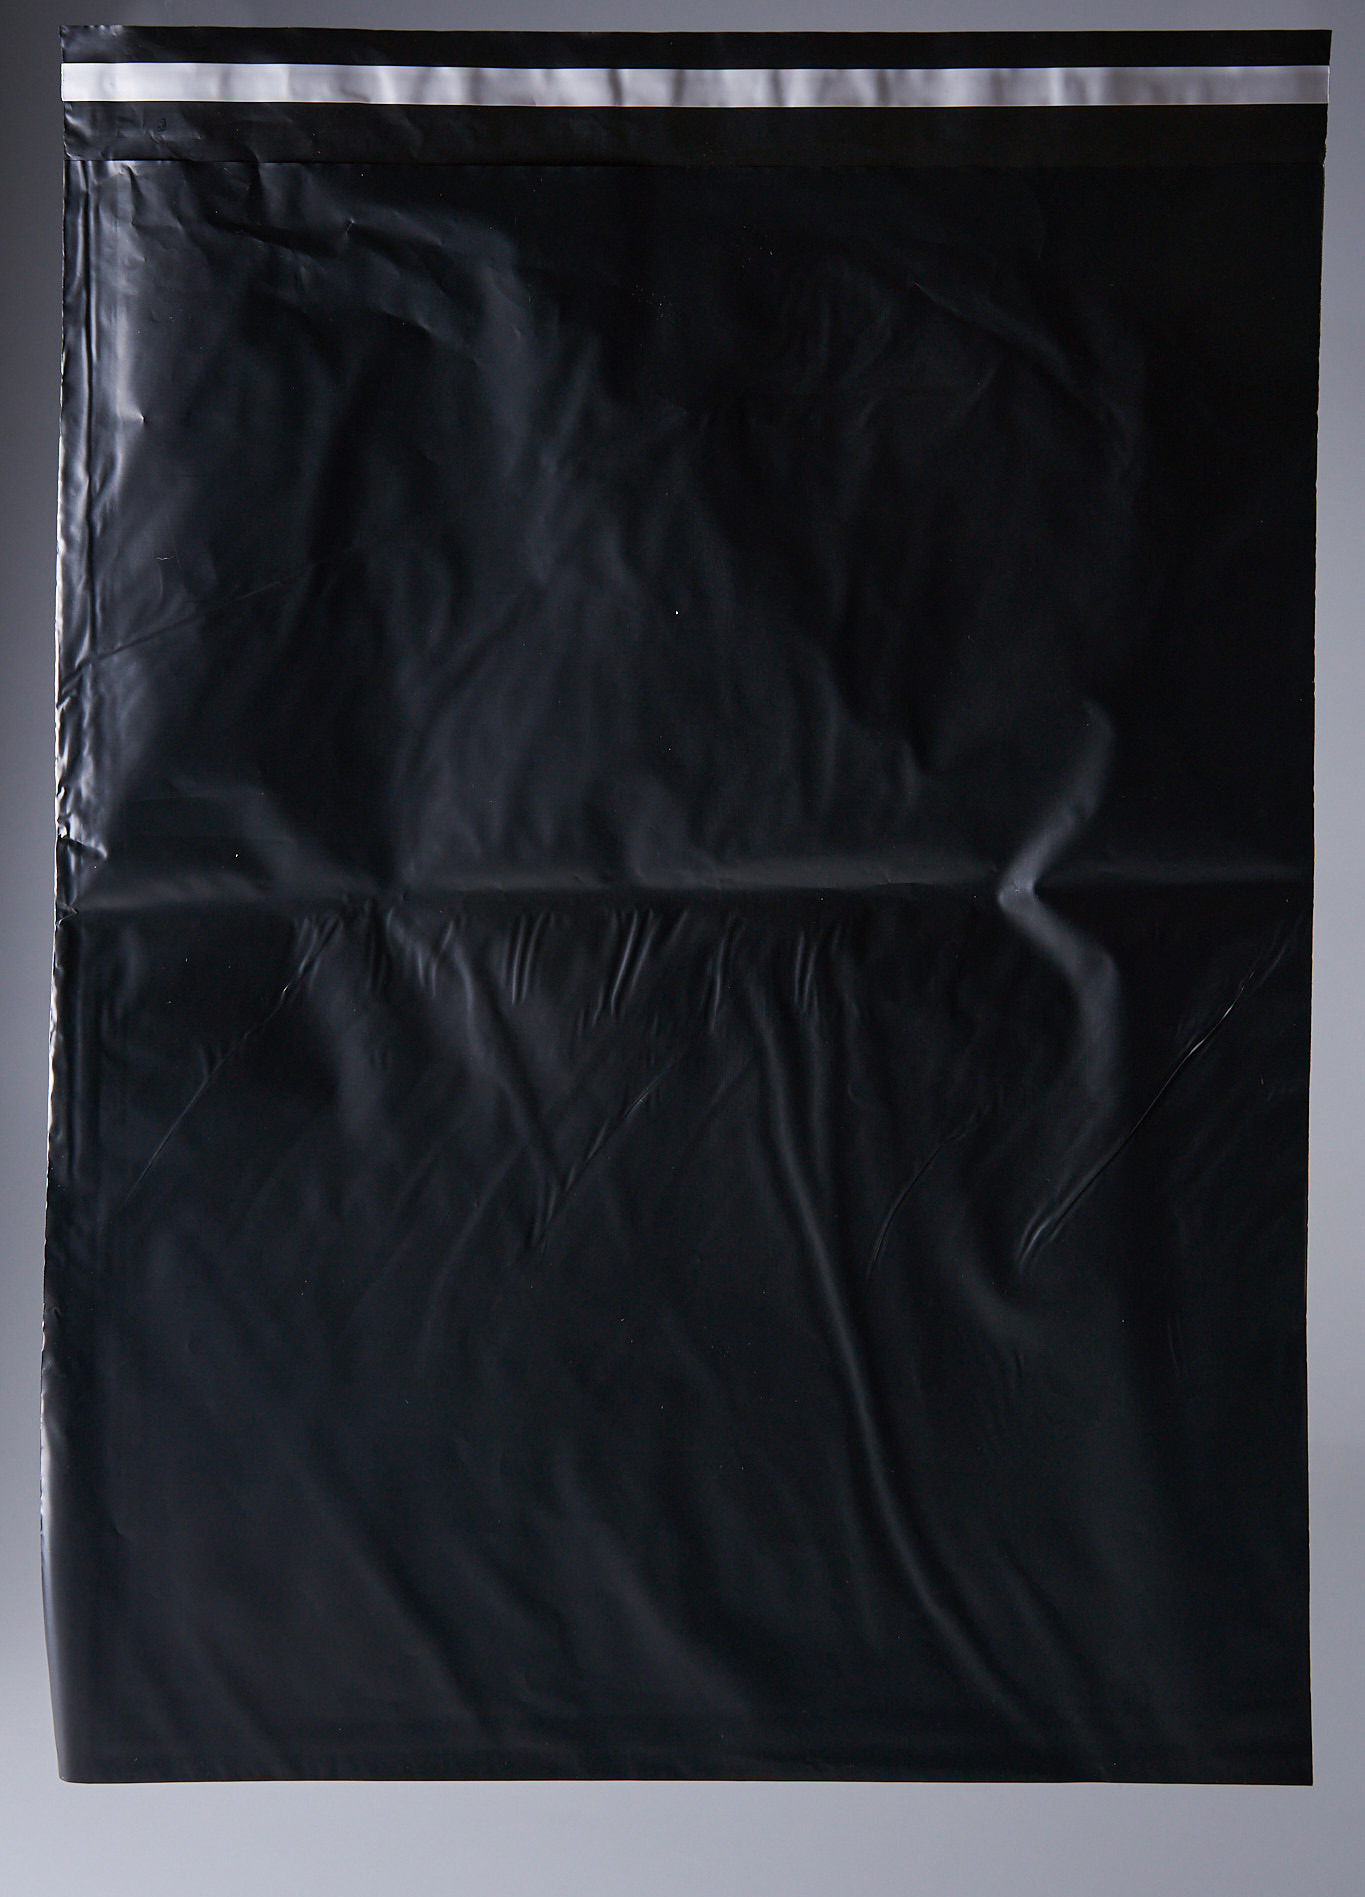 91017059 Пакет для компактного хранения 100 шт 40x50 см полиэтилен цвет черный STLM-0443017 PACK INNOVATION